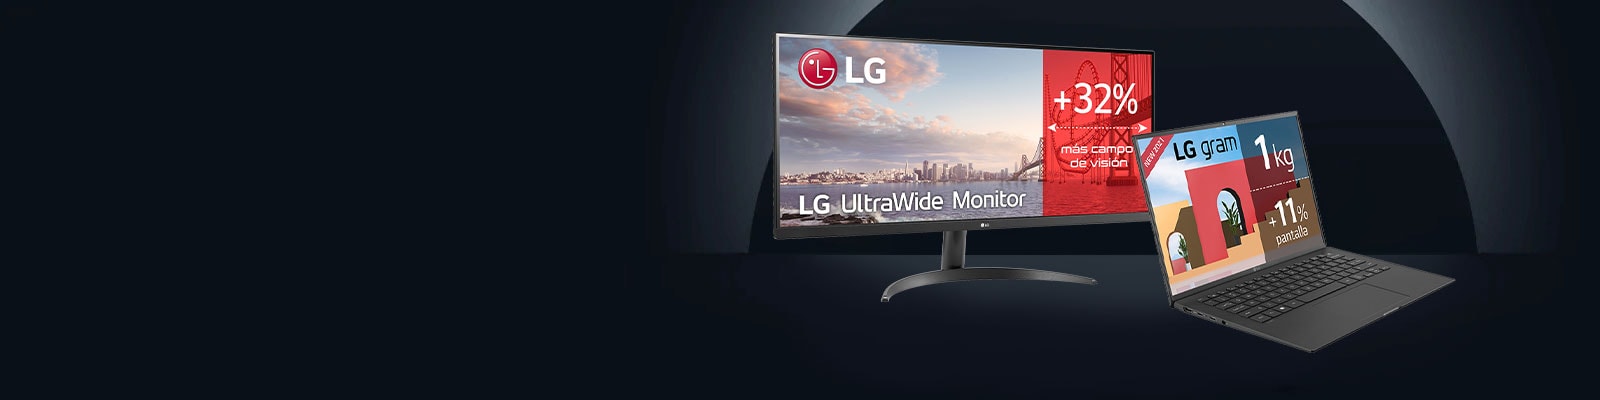 Monitores y ordenadores LG